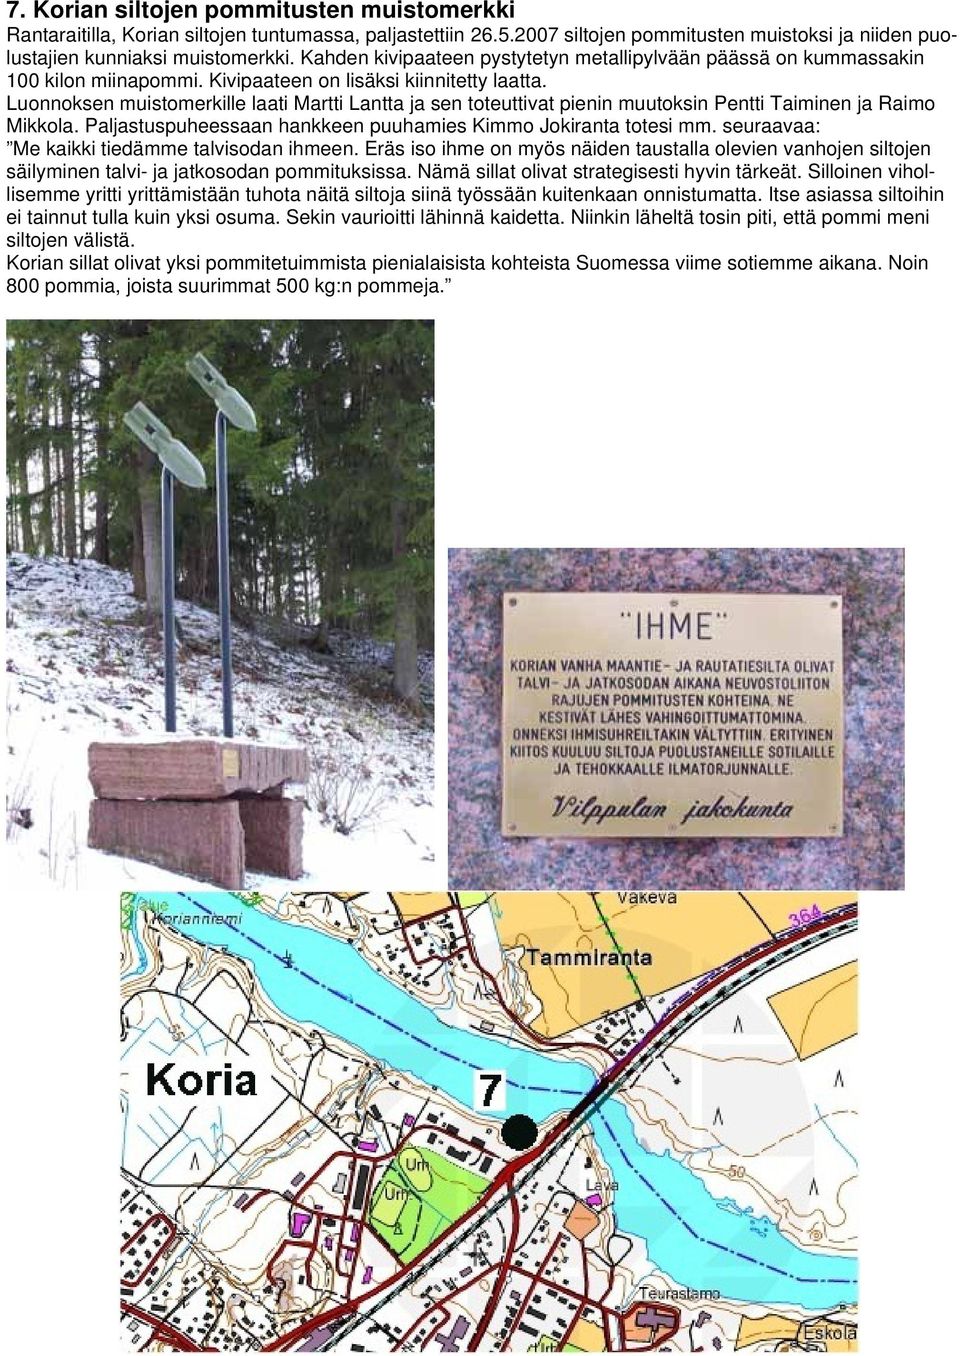 Luonnoksen muistomerkille laati Martti Lantta ja sen toteuttivat pienin muutoksin Pentti Taiminen ja Raimo Mikkola. Paljastuspuheessaan hankkeen puuhamies Kimmo Jokiranta totesi mm.